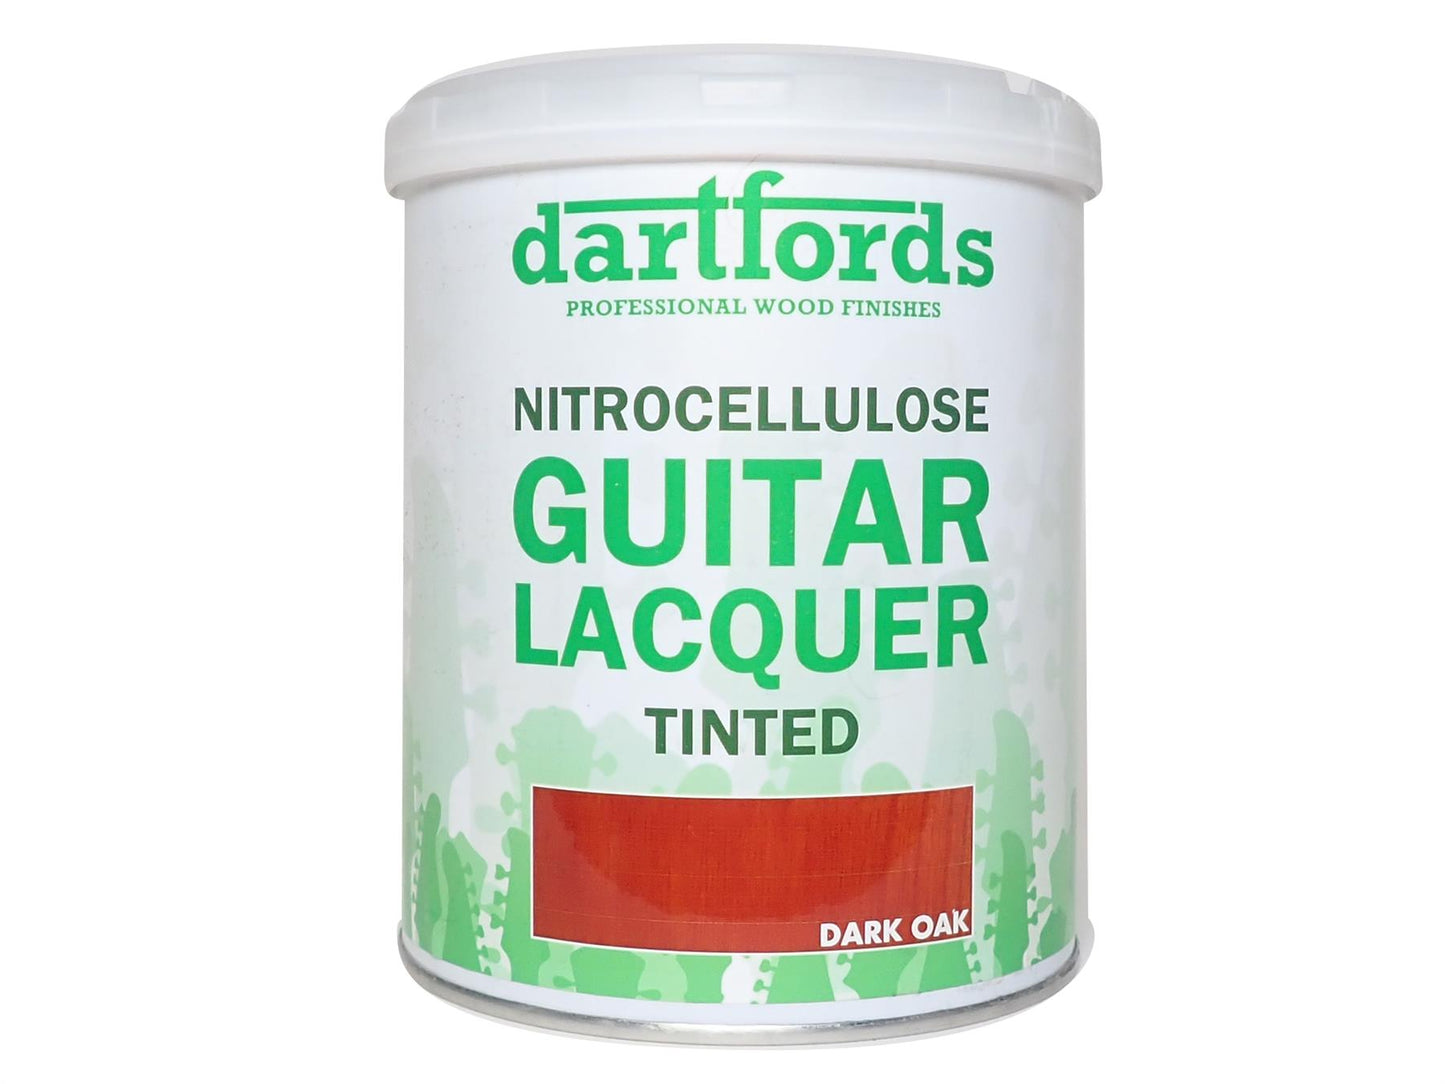 dartfords Dark Oak Nitrocellulose Guitar Lacquer - 1 litre Tin